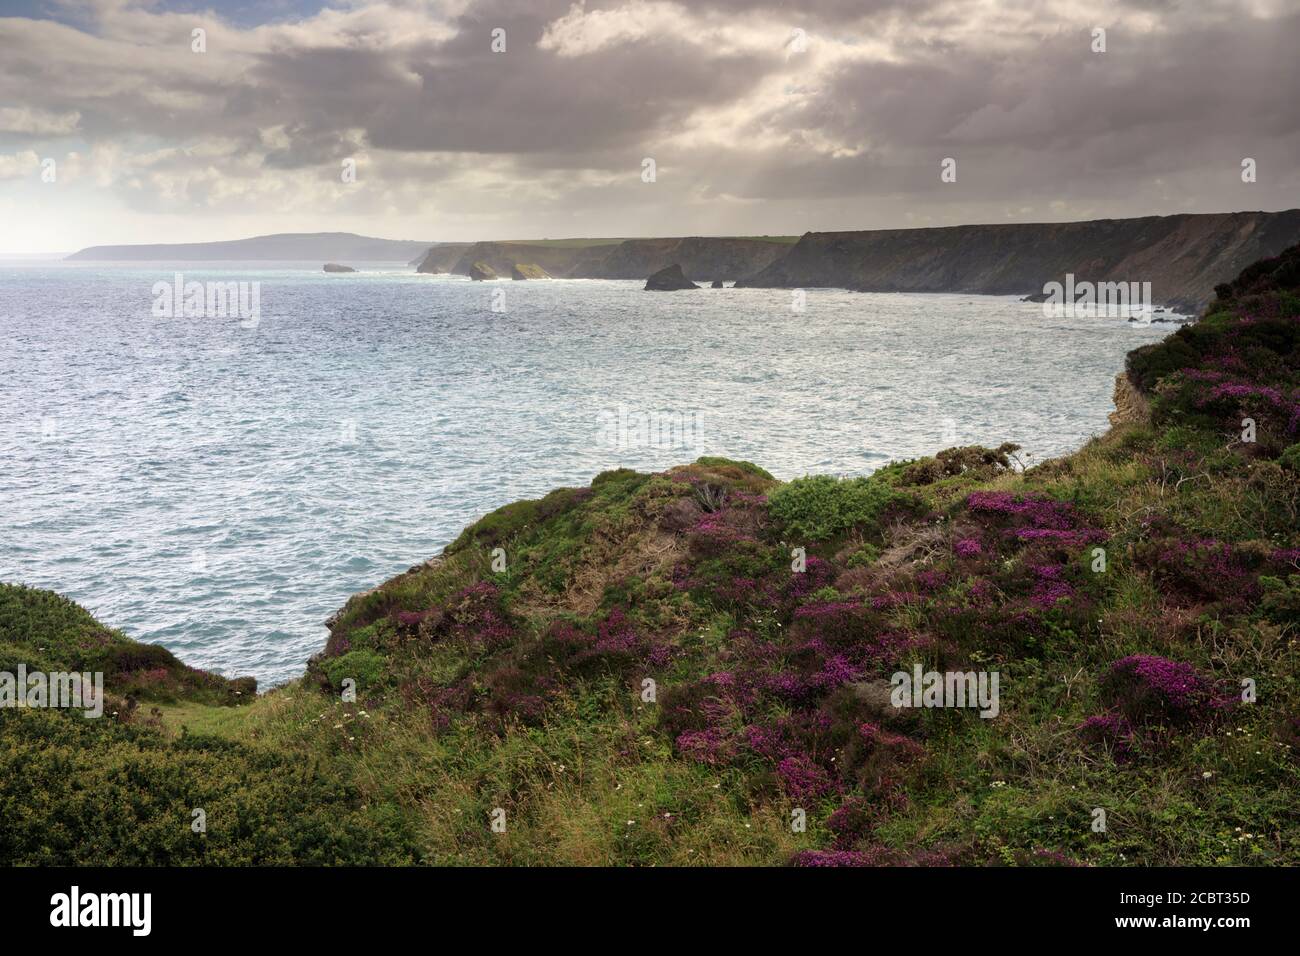 La vista a lo largo de la costa norte de Cornwall capturado desde el camino de la costa suroeste al este de la boca del Infierno. Foto de stock